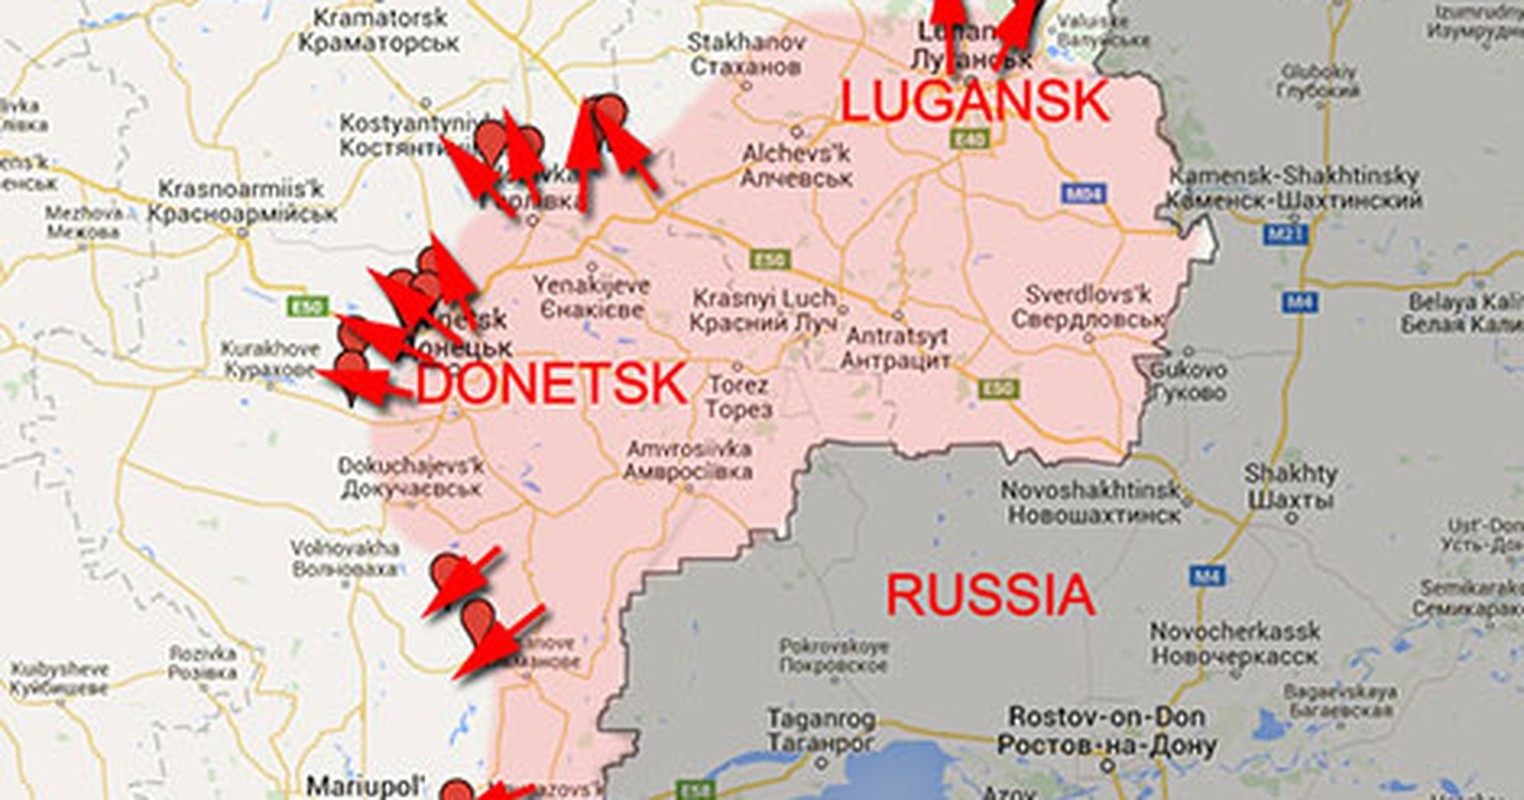 Xung dot bung phat: Donetsk hung chiu phao kich lon cua Ukraine-Hinh-3